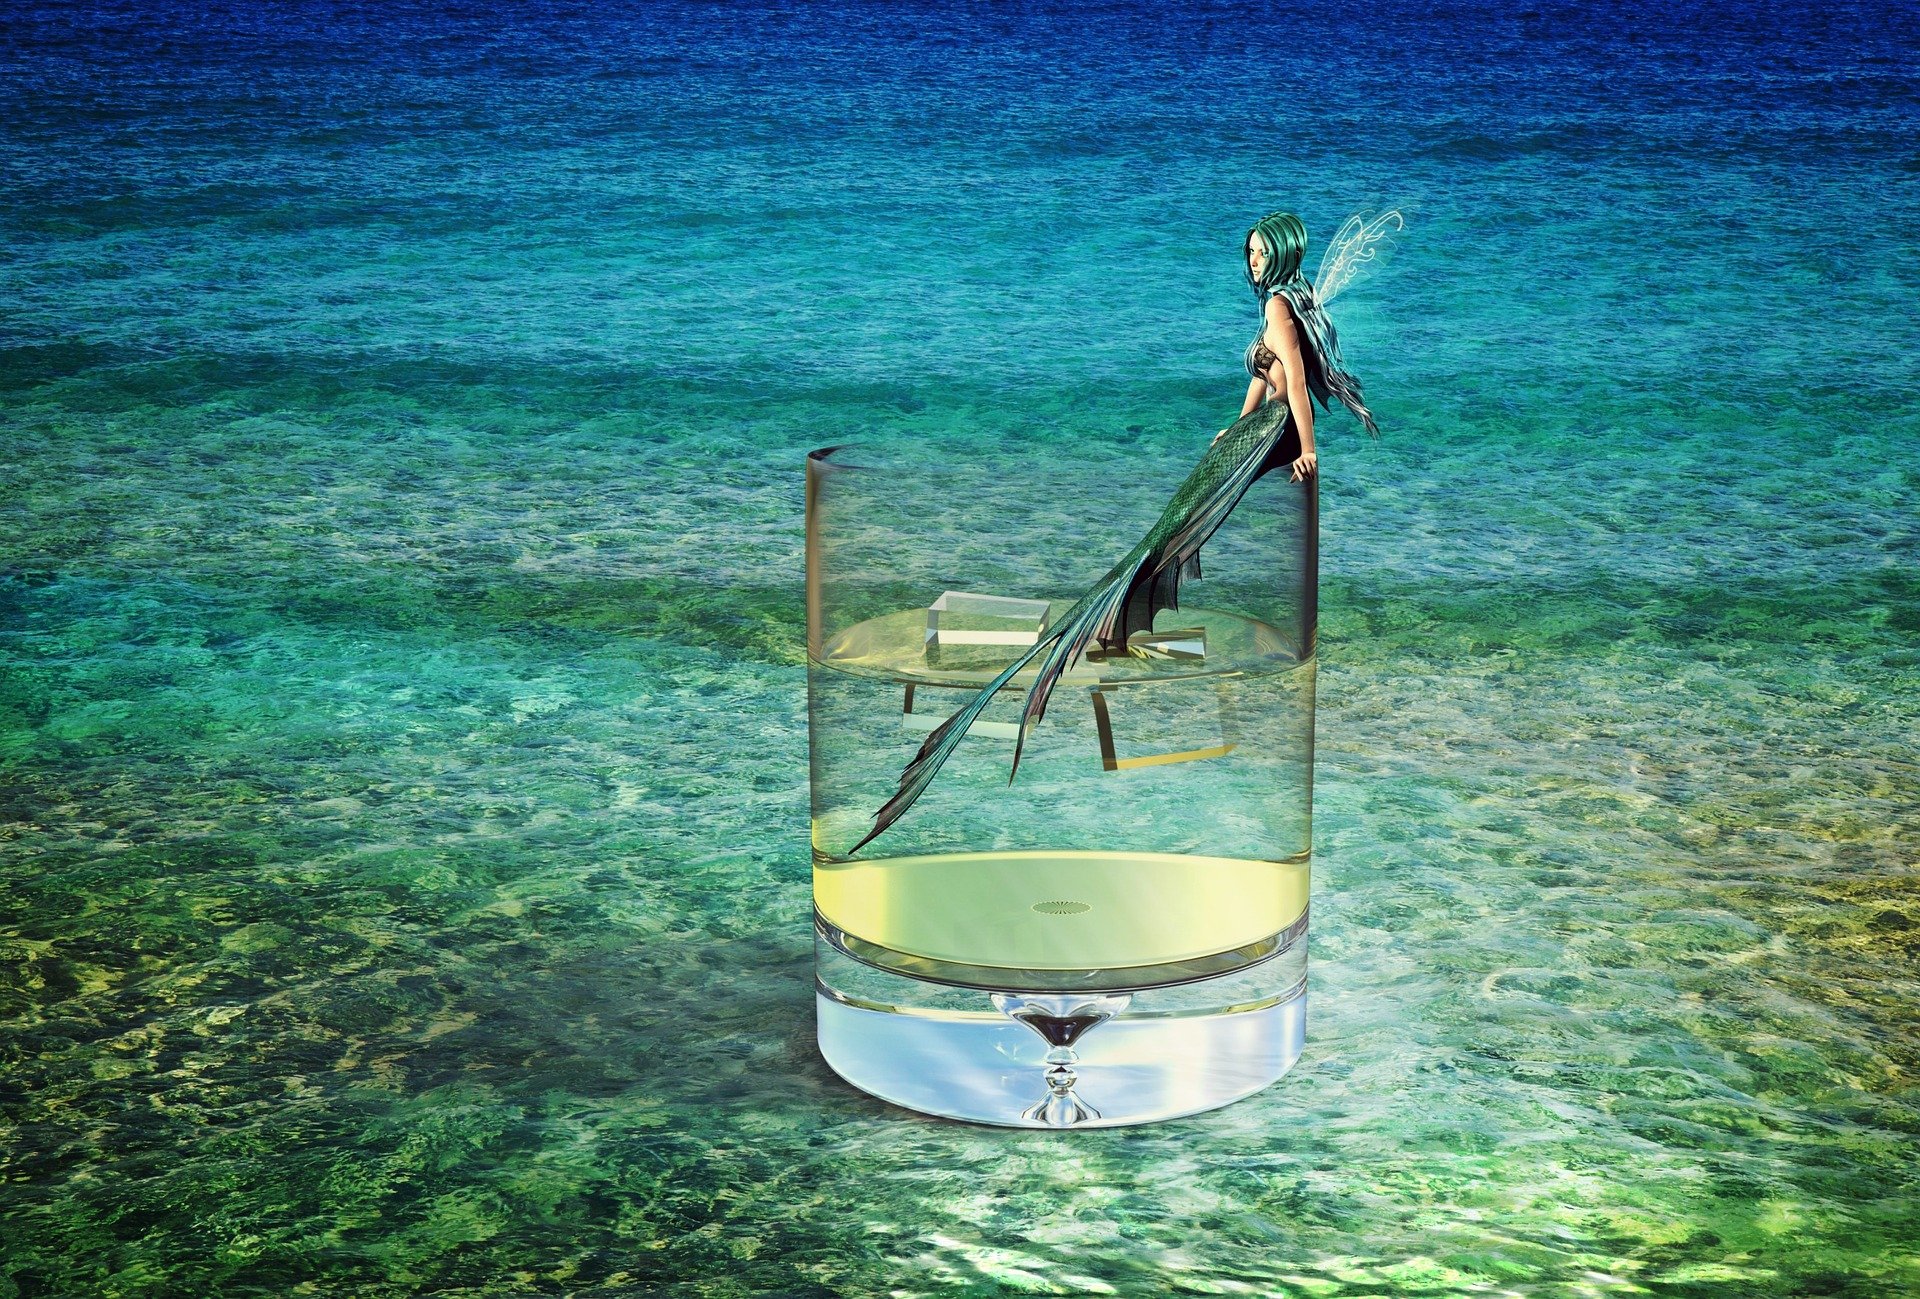 В прозрачной воде снуют. Прозрачная вода. Прозрачная вода в стакане. Прозрачная вода море. Лодка на прозрачной воде.